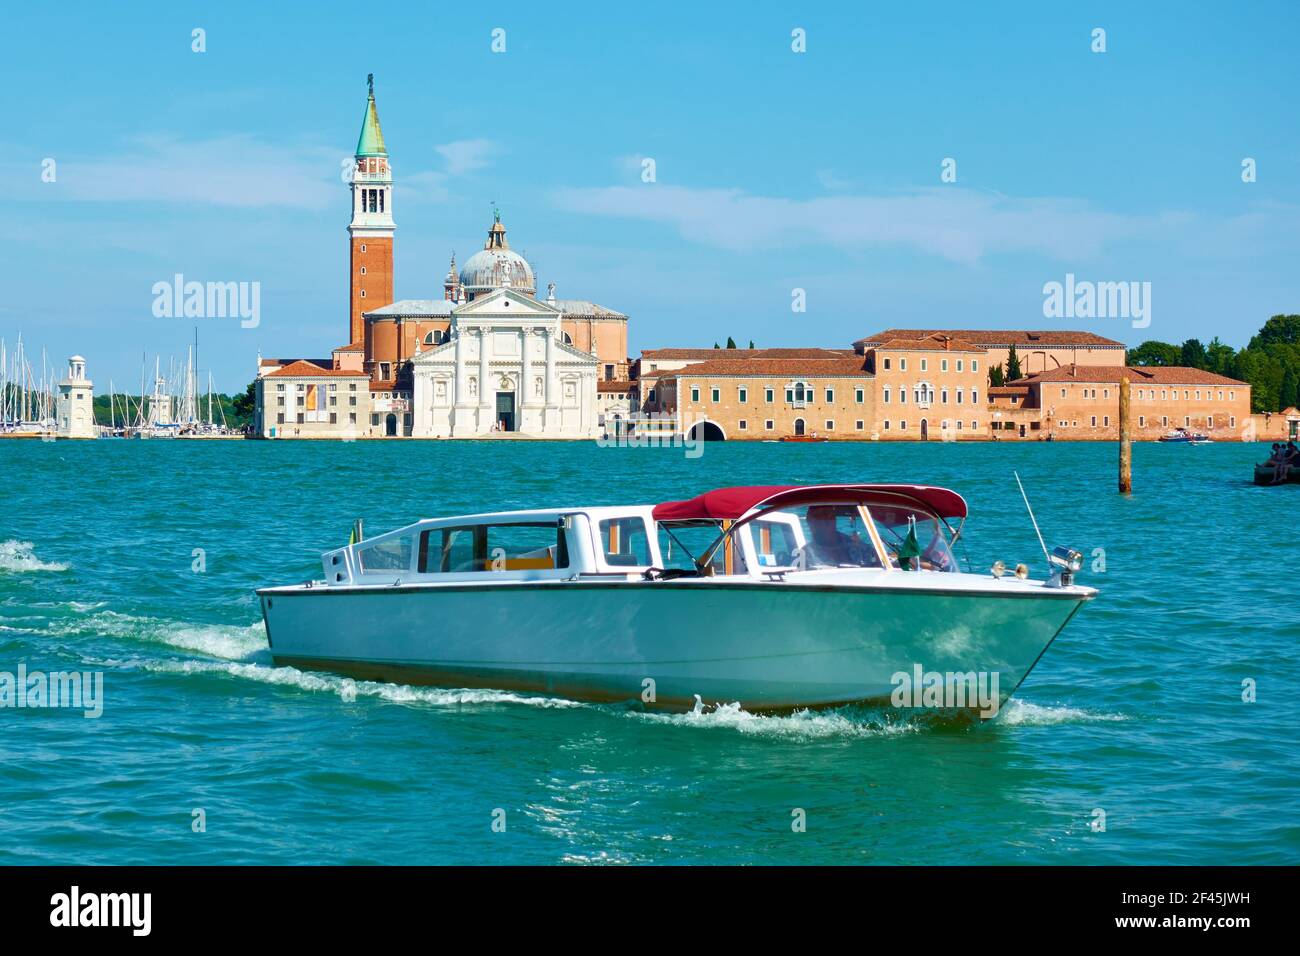 Wassertaxi in Venedig, Italien. Venezianischer Blick mit San Giorgio Maggiore und Motorboot, Stadtbild Stockfoto